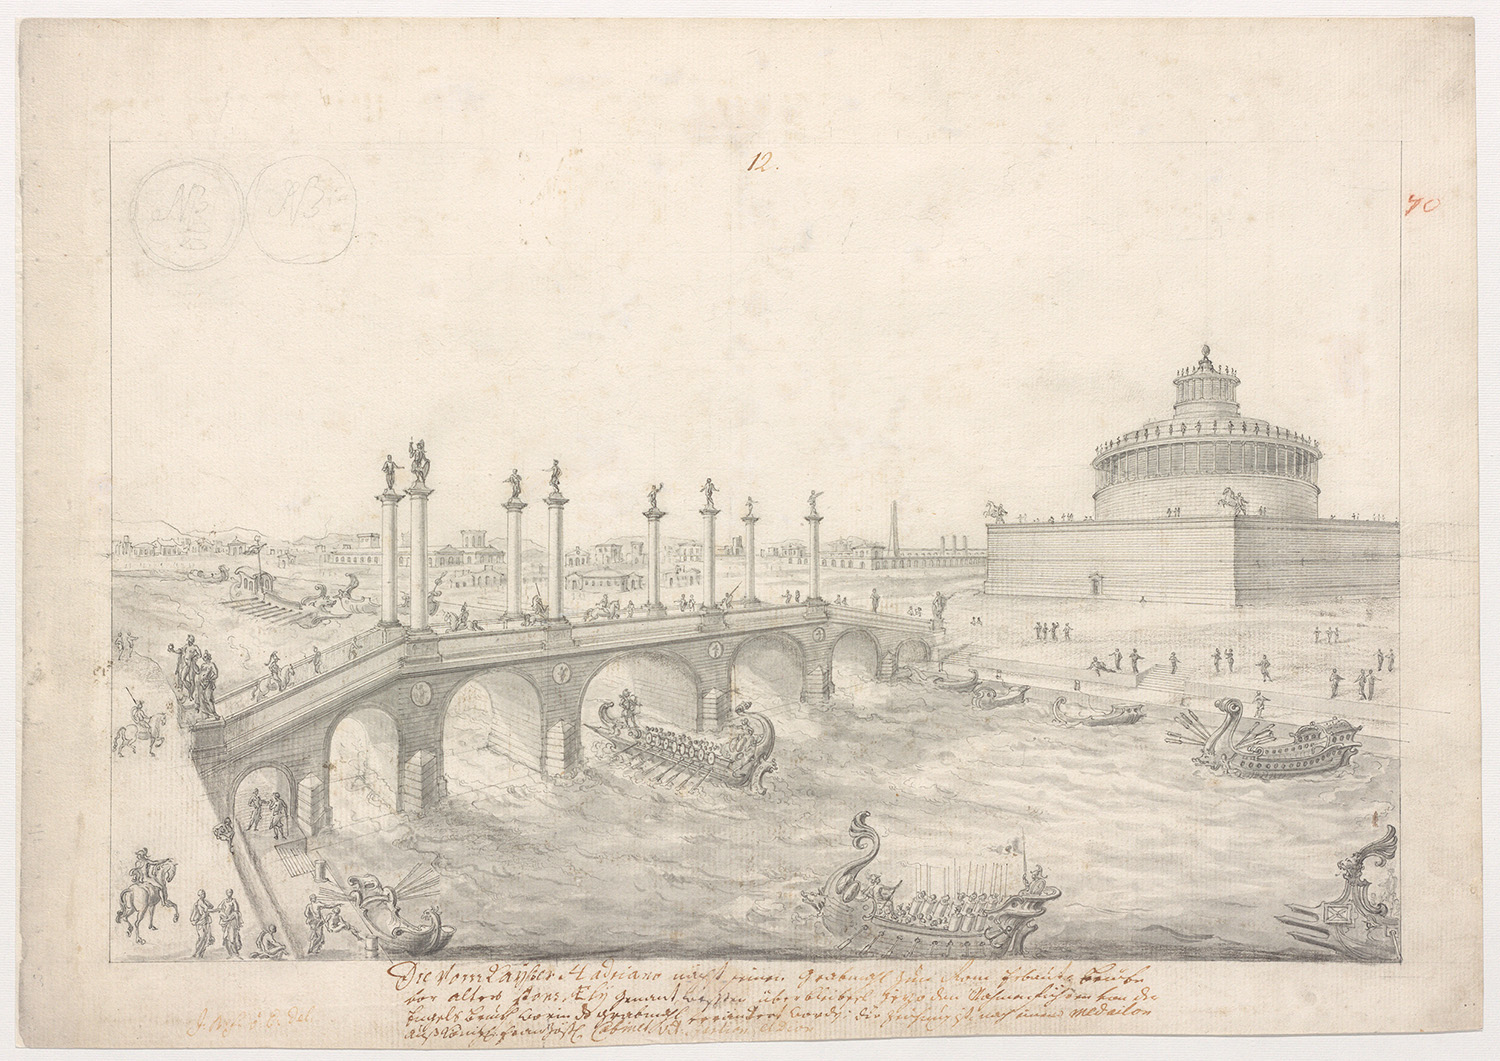 Eine Brücke über einen Fluss führt zu dem Mausoleum auf der rechten Seite. Auf dem Fluss sind viele Boote zu sehen und auch Personen, teilweise mit Pferden, überqueren die Brücke.